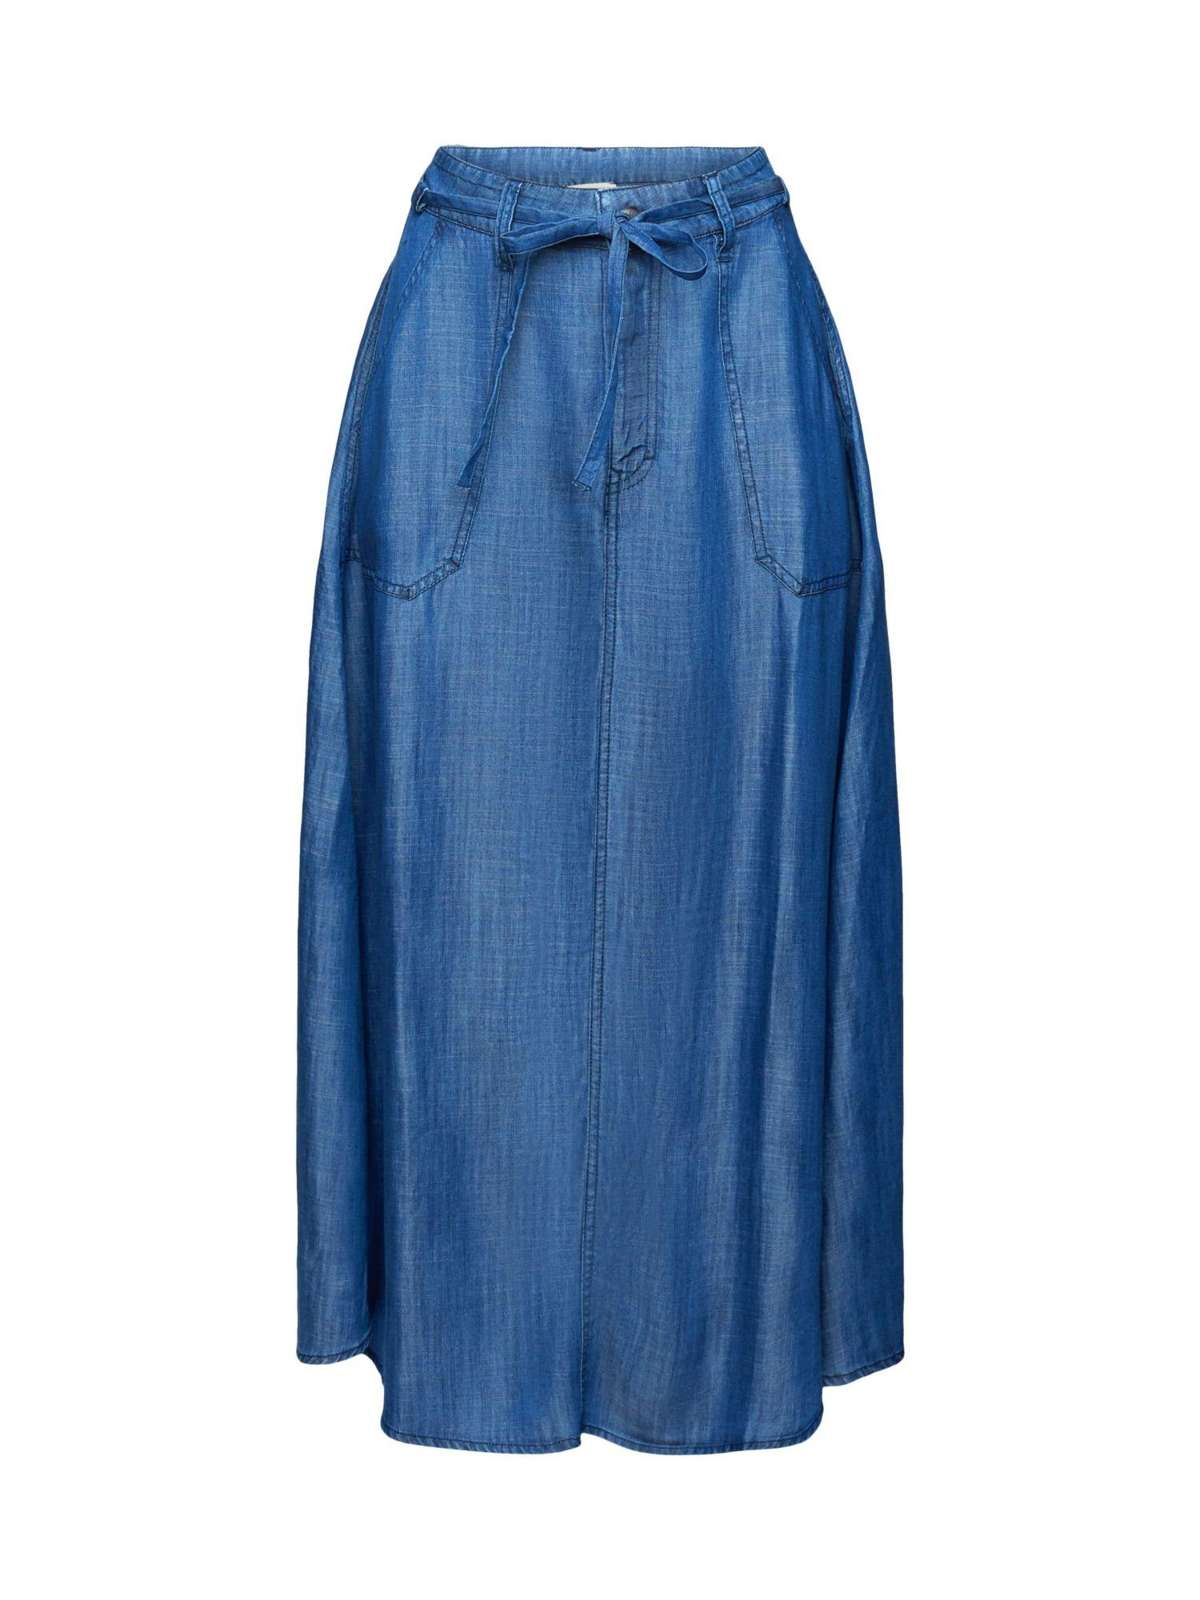 Джинсовая юбка из TENCEL™: юбка миди в джинсовом стиле